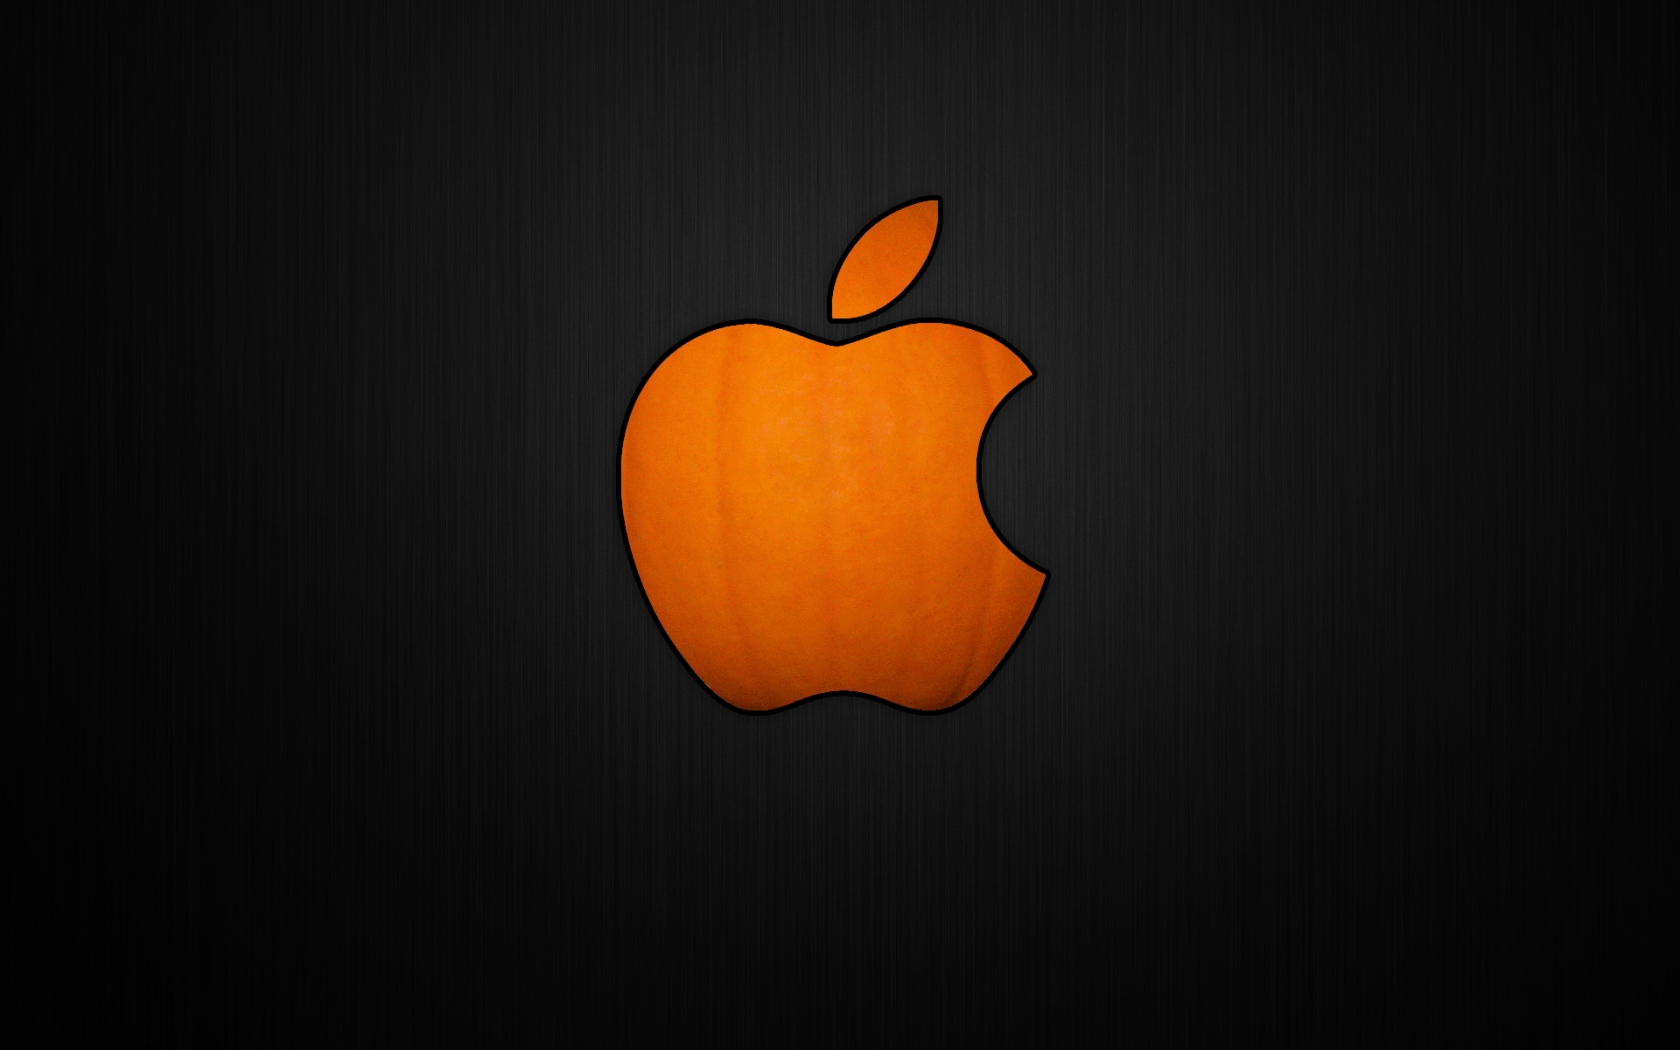 Cool Pumpkin Apple for 1680 x 1050 widescreen resolution